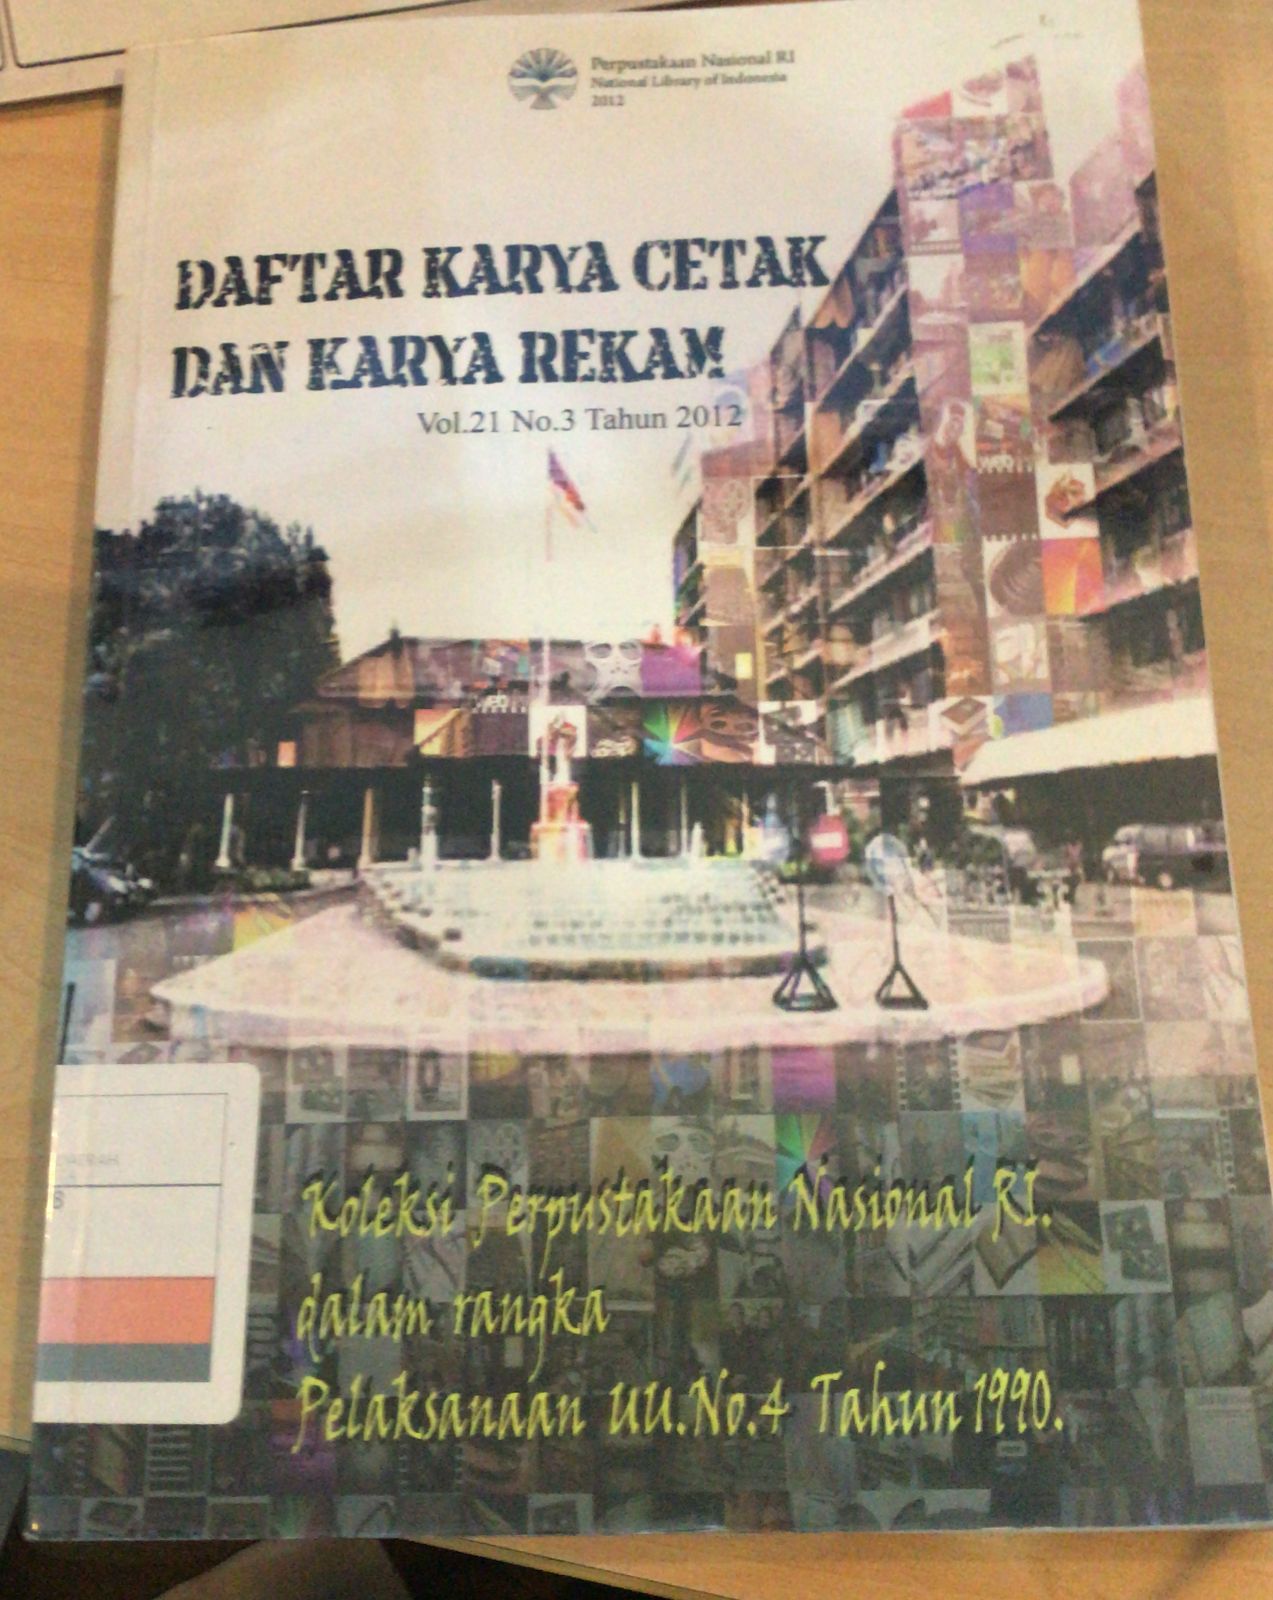 Daftar Karya Cetak dan Karya Rekam Vol 21 No. 3 Tahun 2012 :  oleksi Perpustakaan Nasional RI Dalam Rangka Pelaksanaan UU No.4./1991